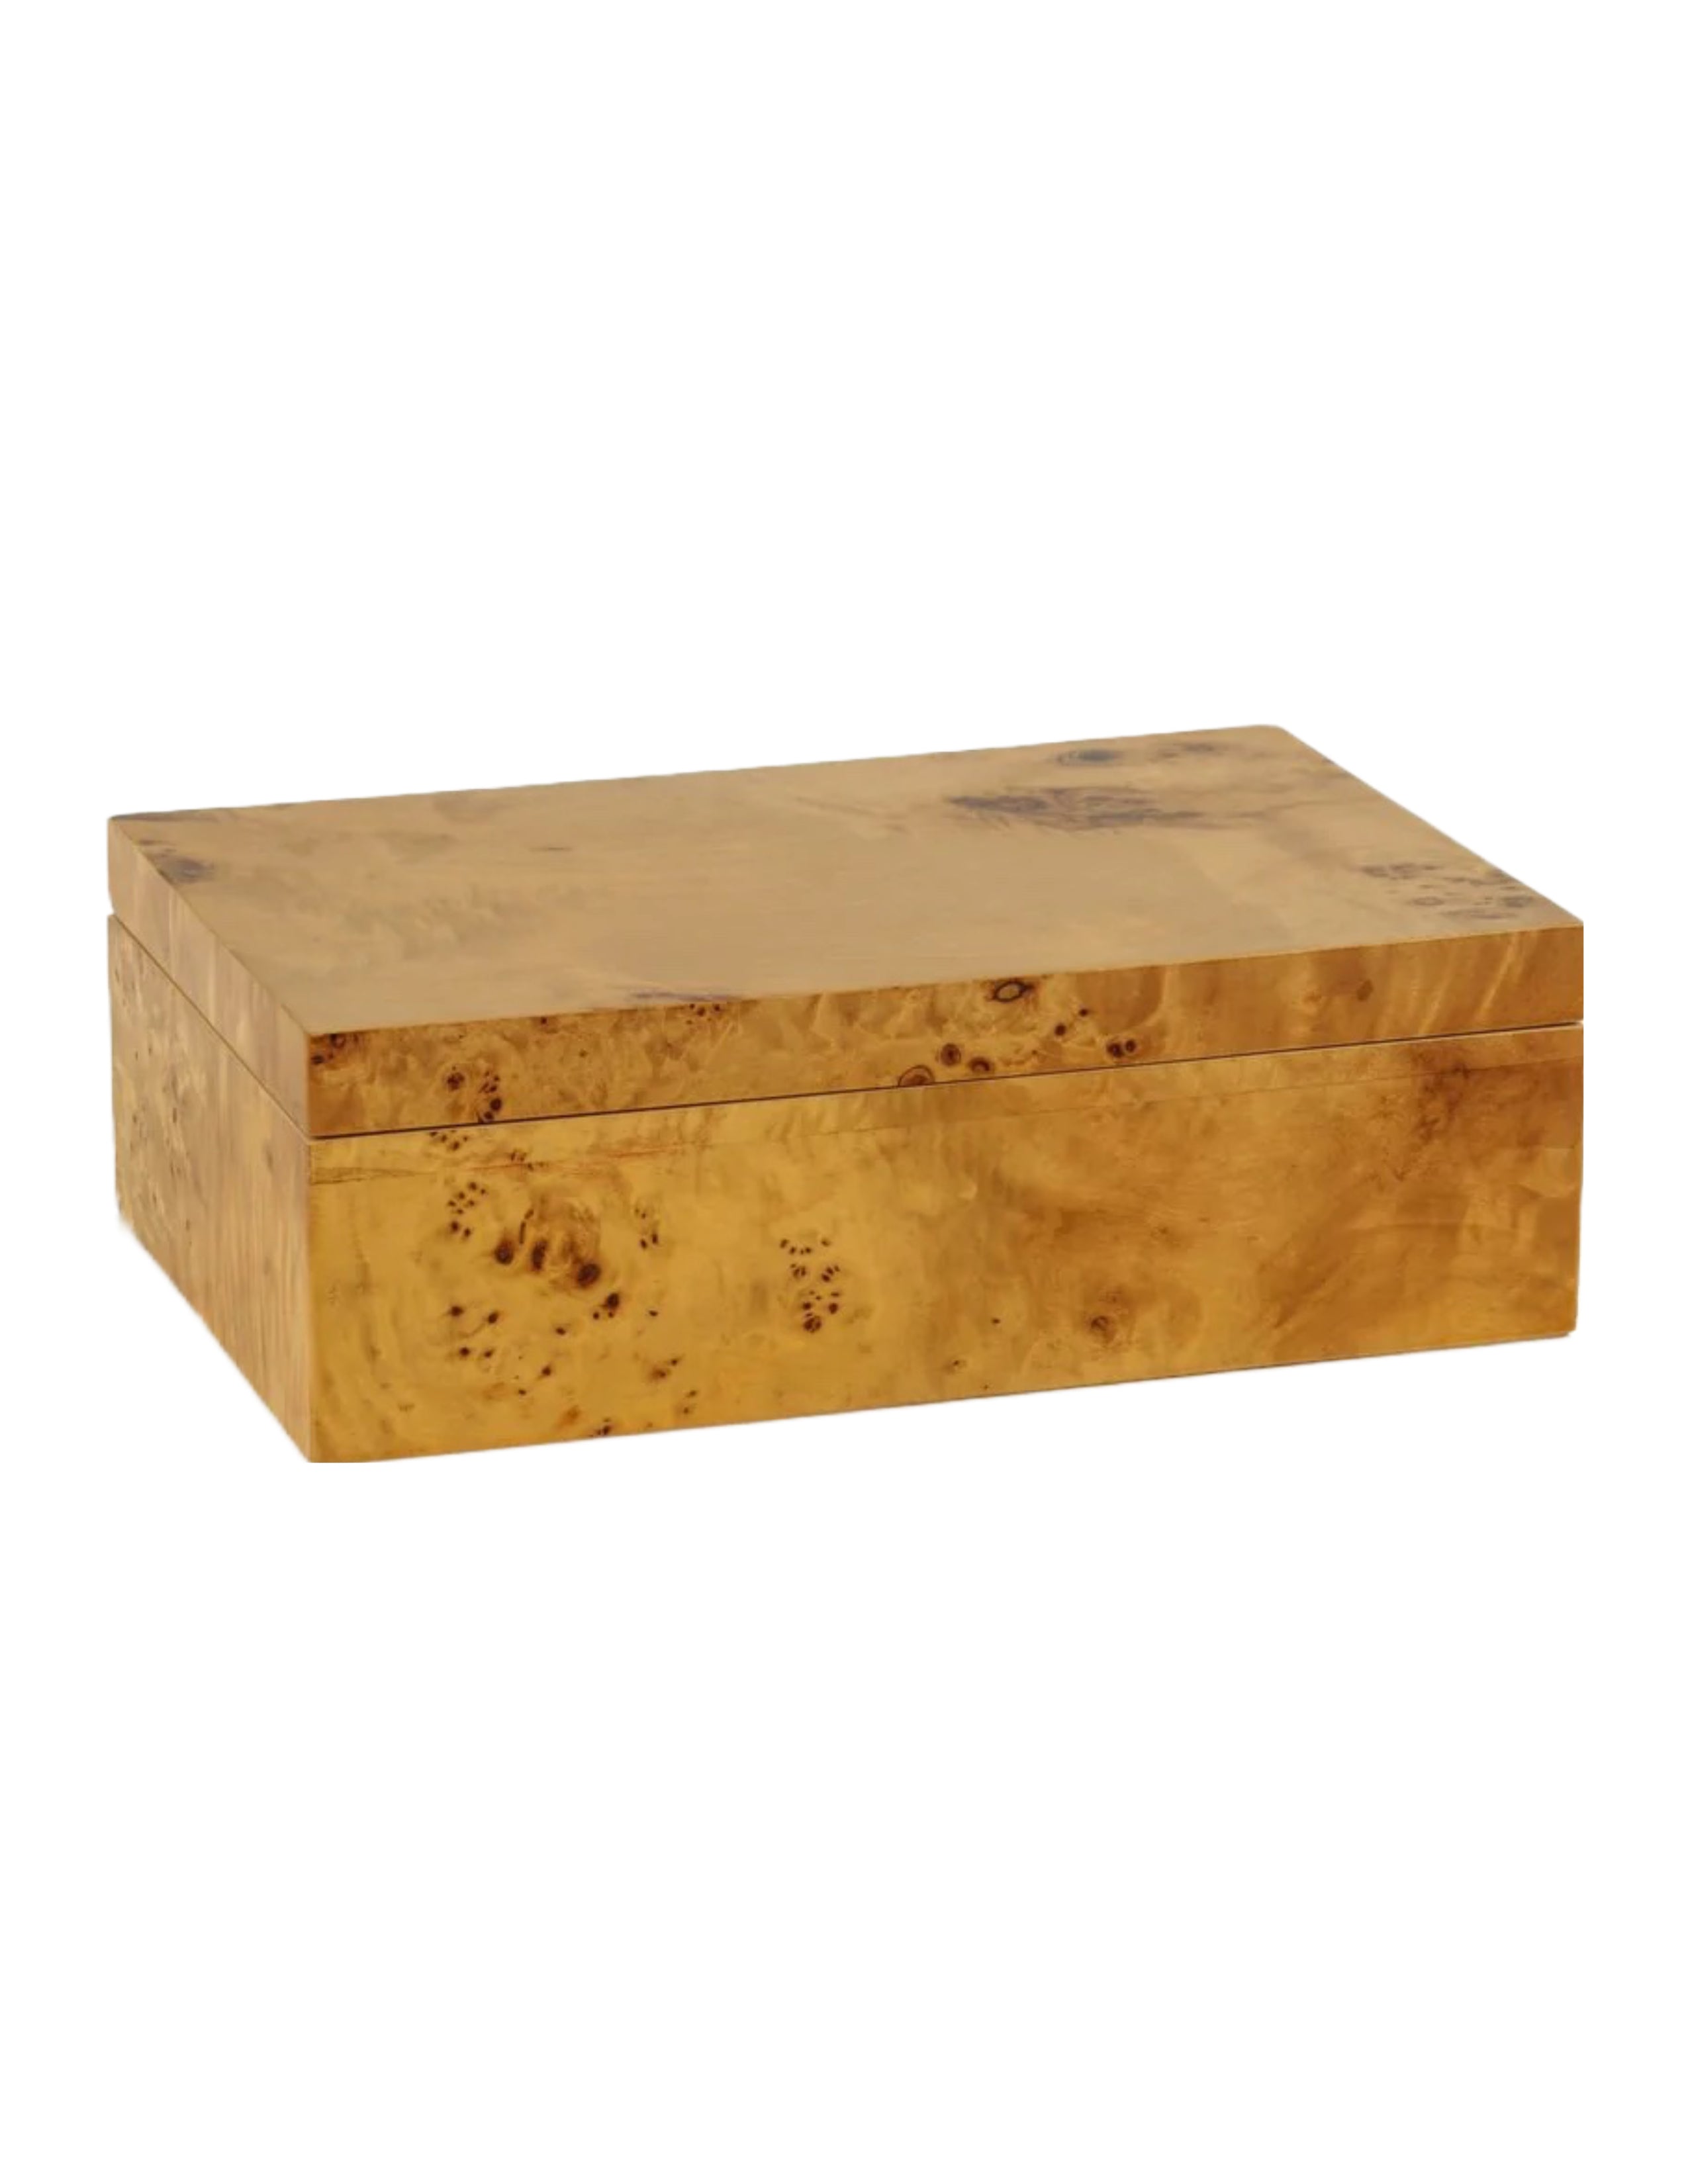 Leiden Wooden Box